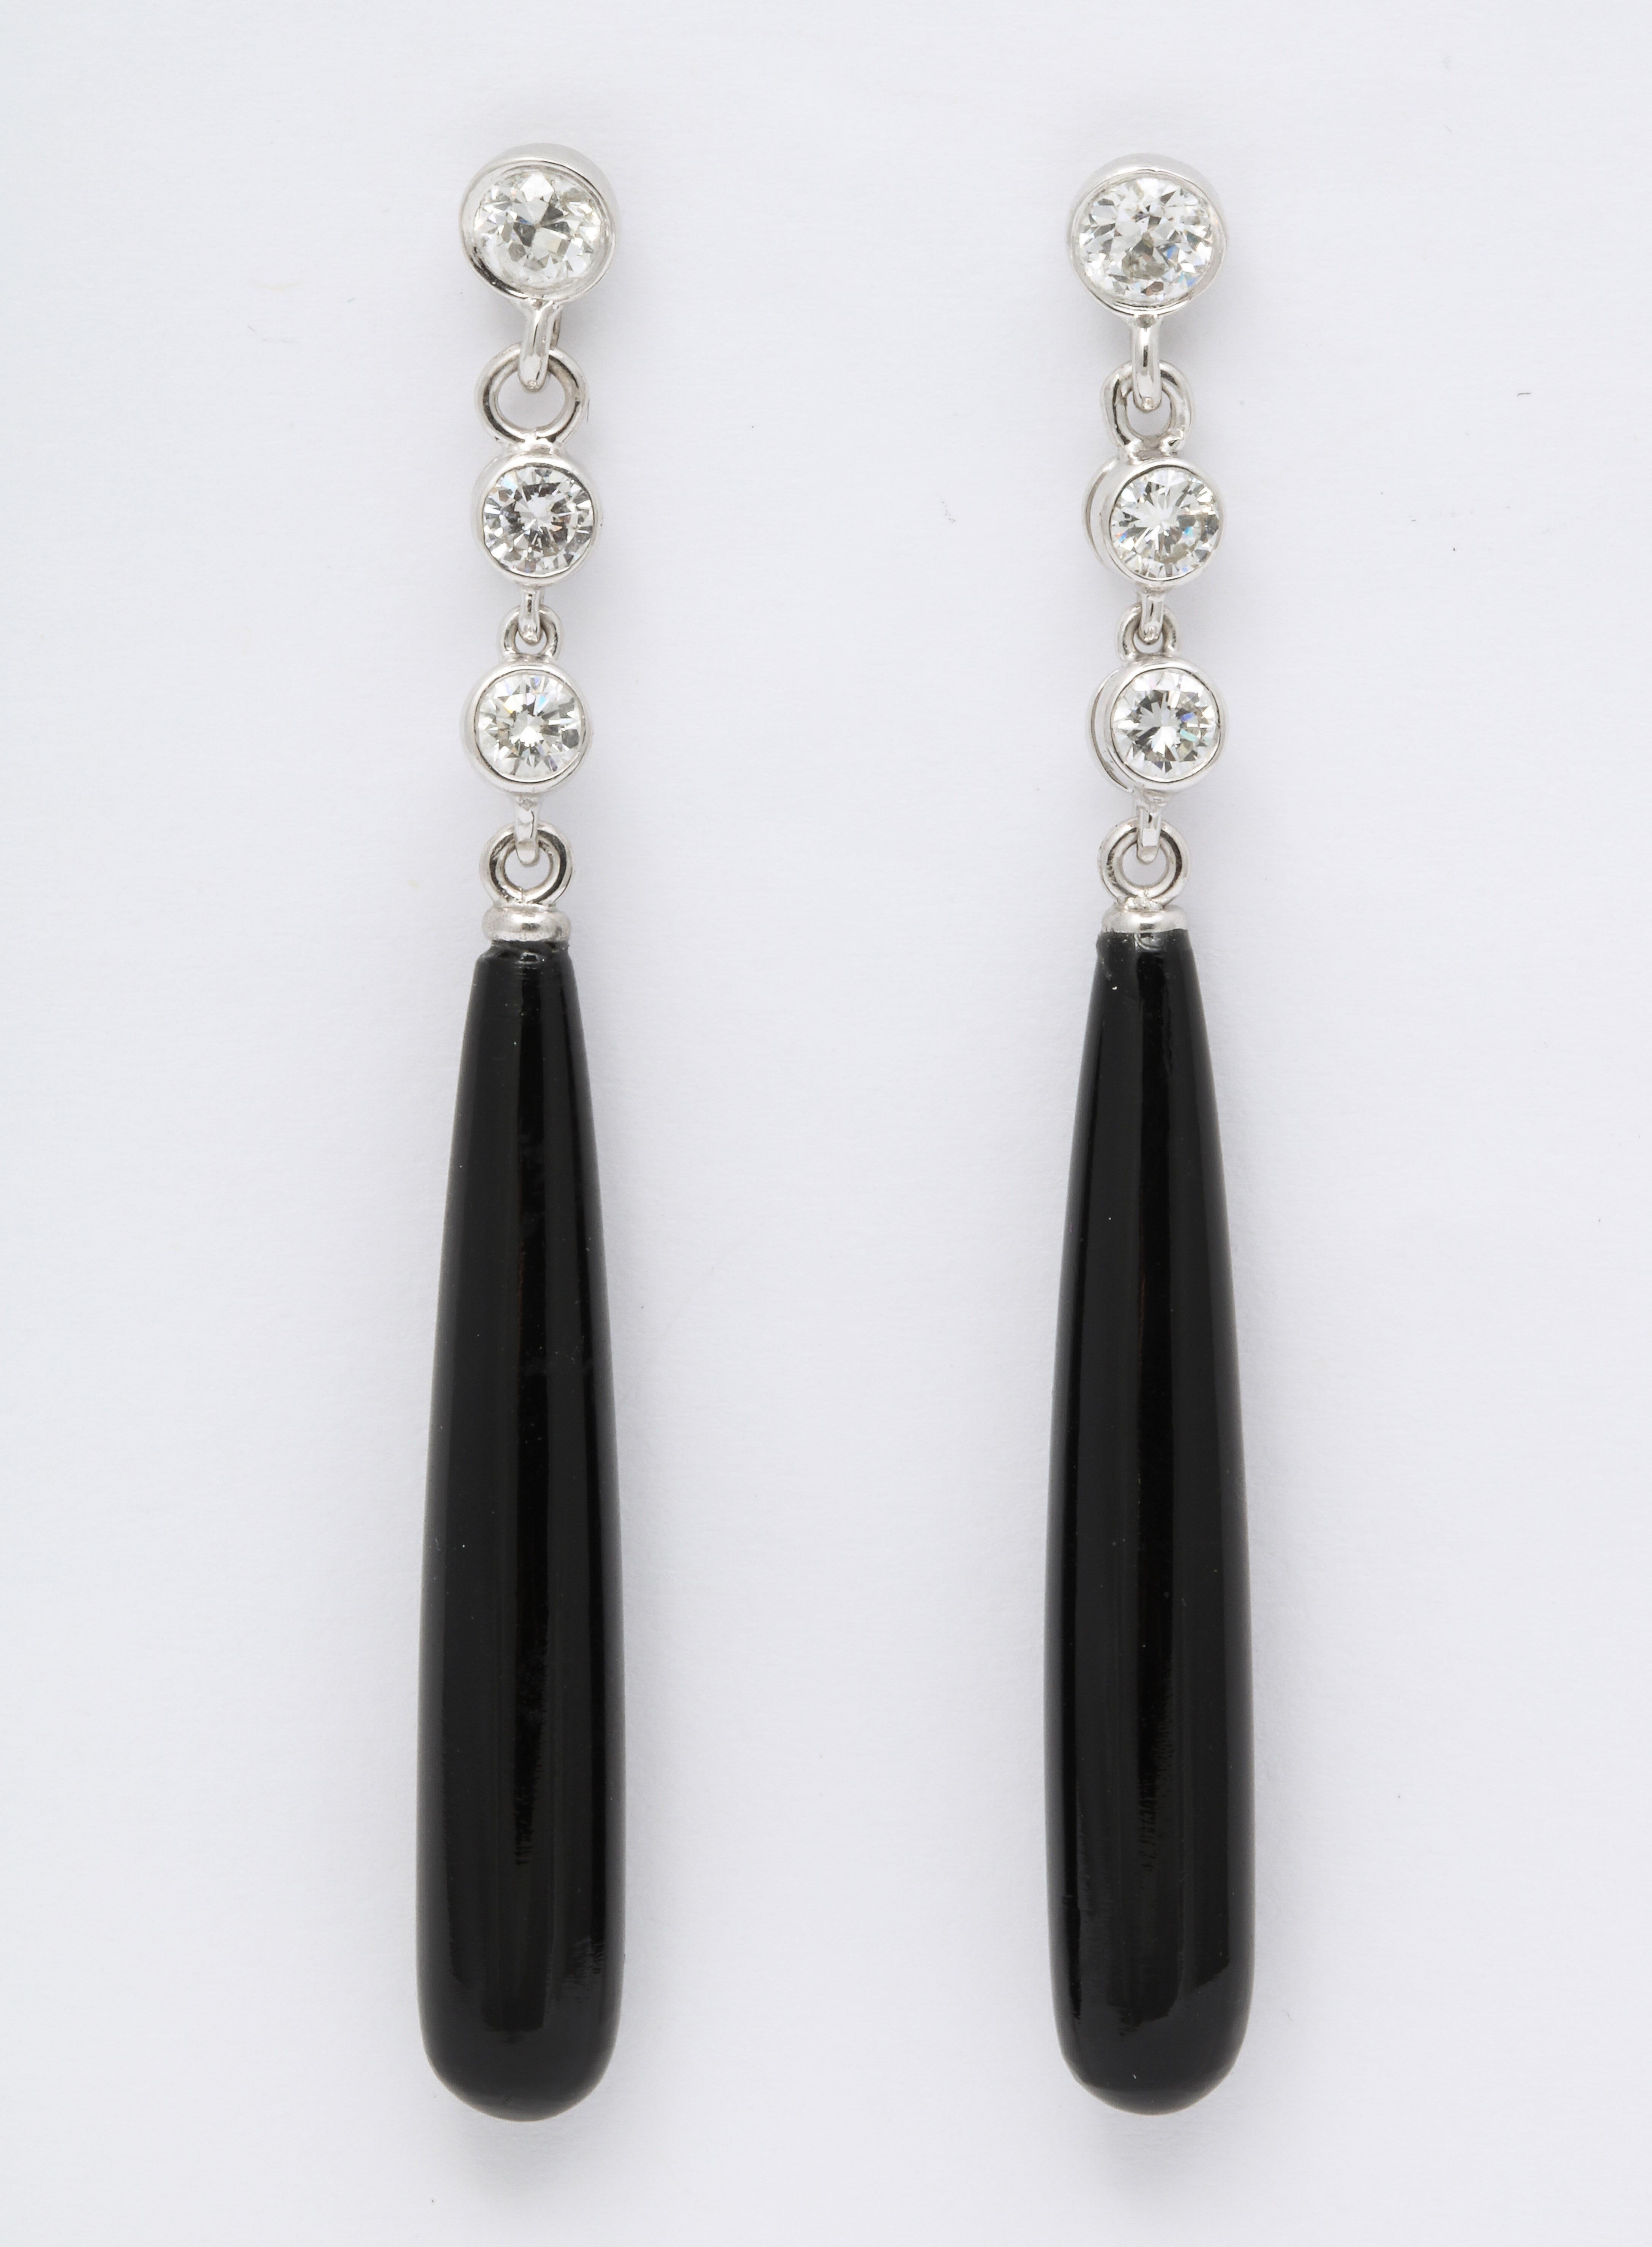 Ces boucles d'oreilles pendantes en onyx et diamants sont de style Art déco classique et peuvent être portées en journée ou en soirée. Ils sont suspendus à trois diamants sertis en biseau et sont conçus de manière à ce que le pendentif en onyx